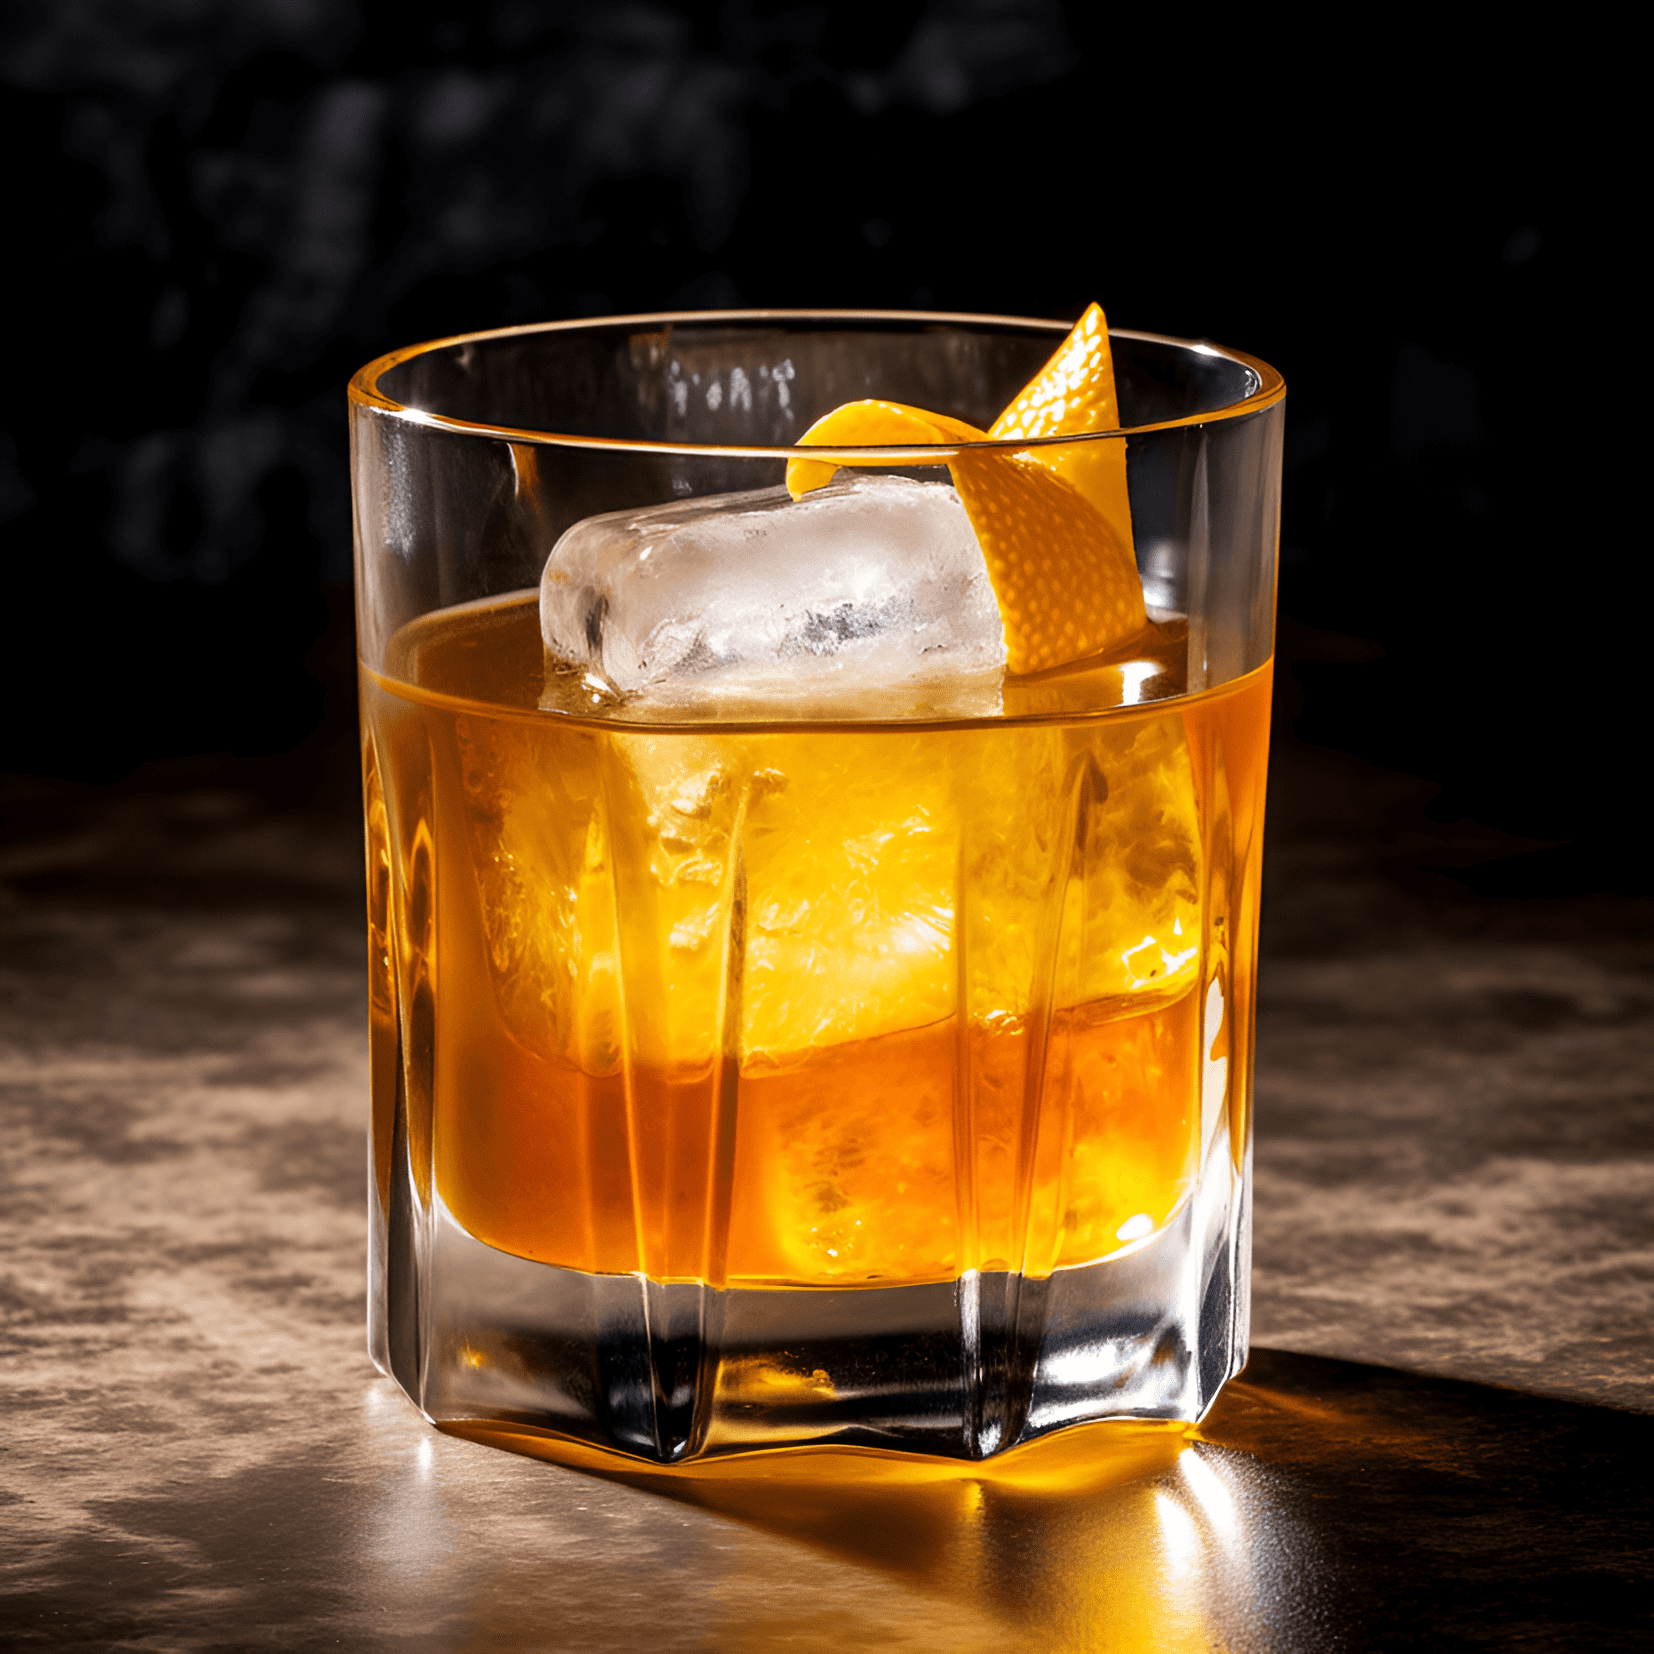 El cóctel Nixon tiene un sabor equilibrado, con una combinación de sabores dulces, ácidos y ligeramente amargos. El bourbon proporciona una base rica y suave, mientras que el jugo de limón agrega una acidez refrescante. El jarabe de orgeat le da un sabor dulce y matices a nuez.